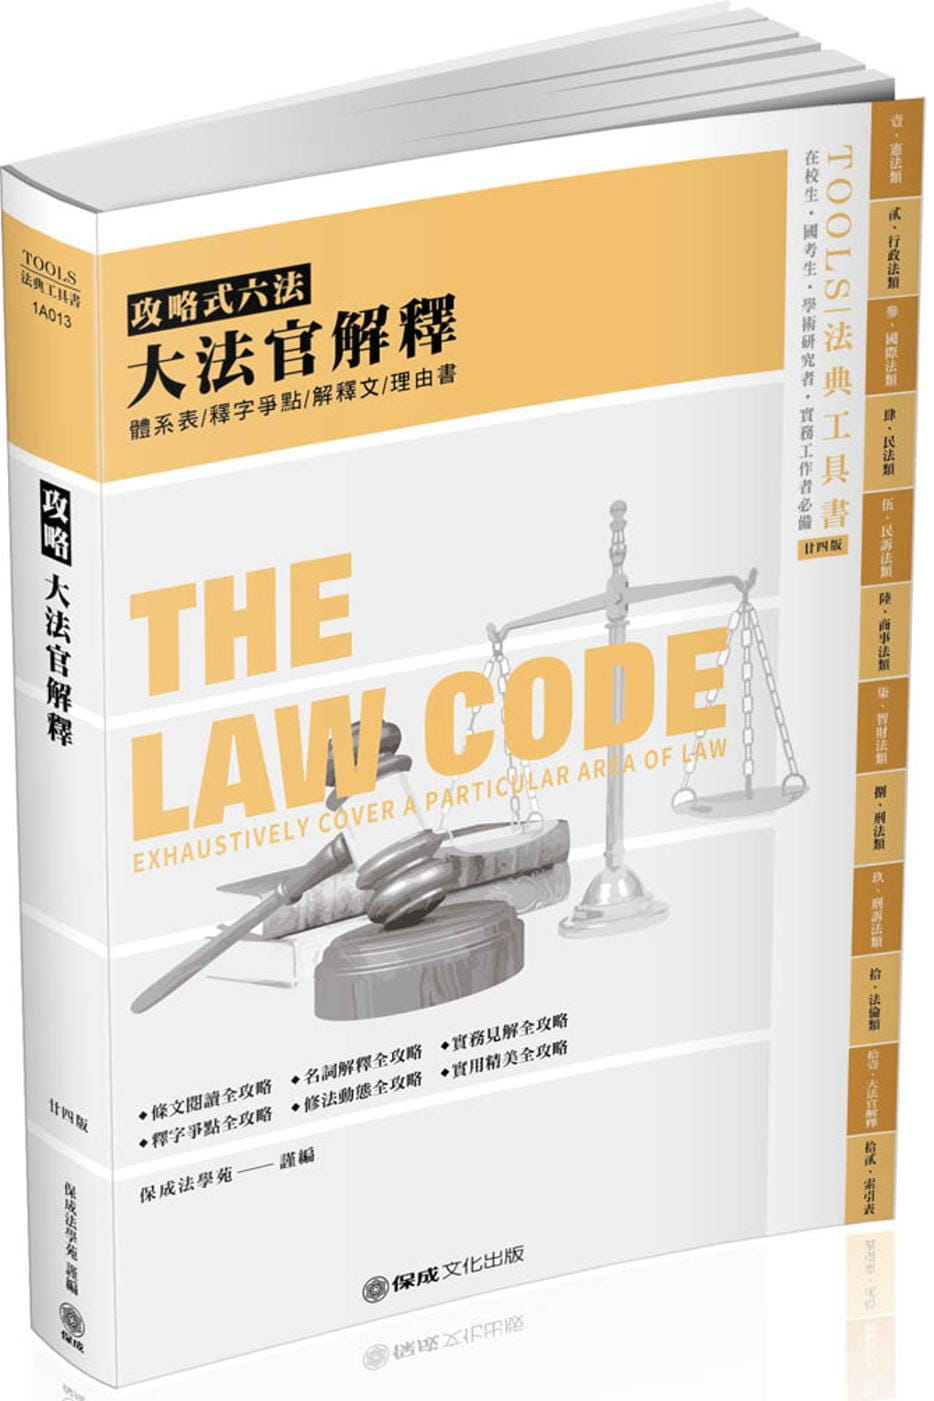 攻略大法官解釋：2020法律法典工具書(保成)(24版)